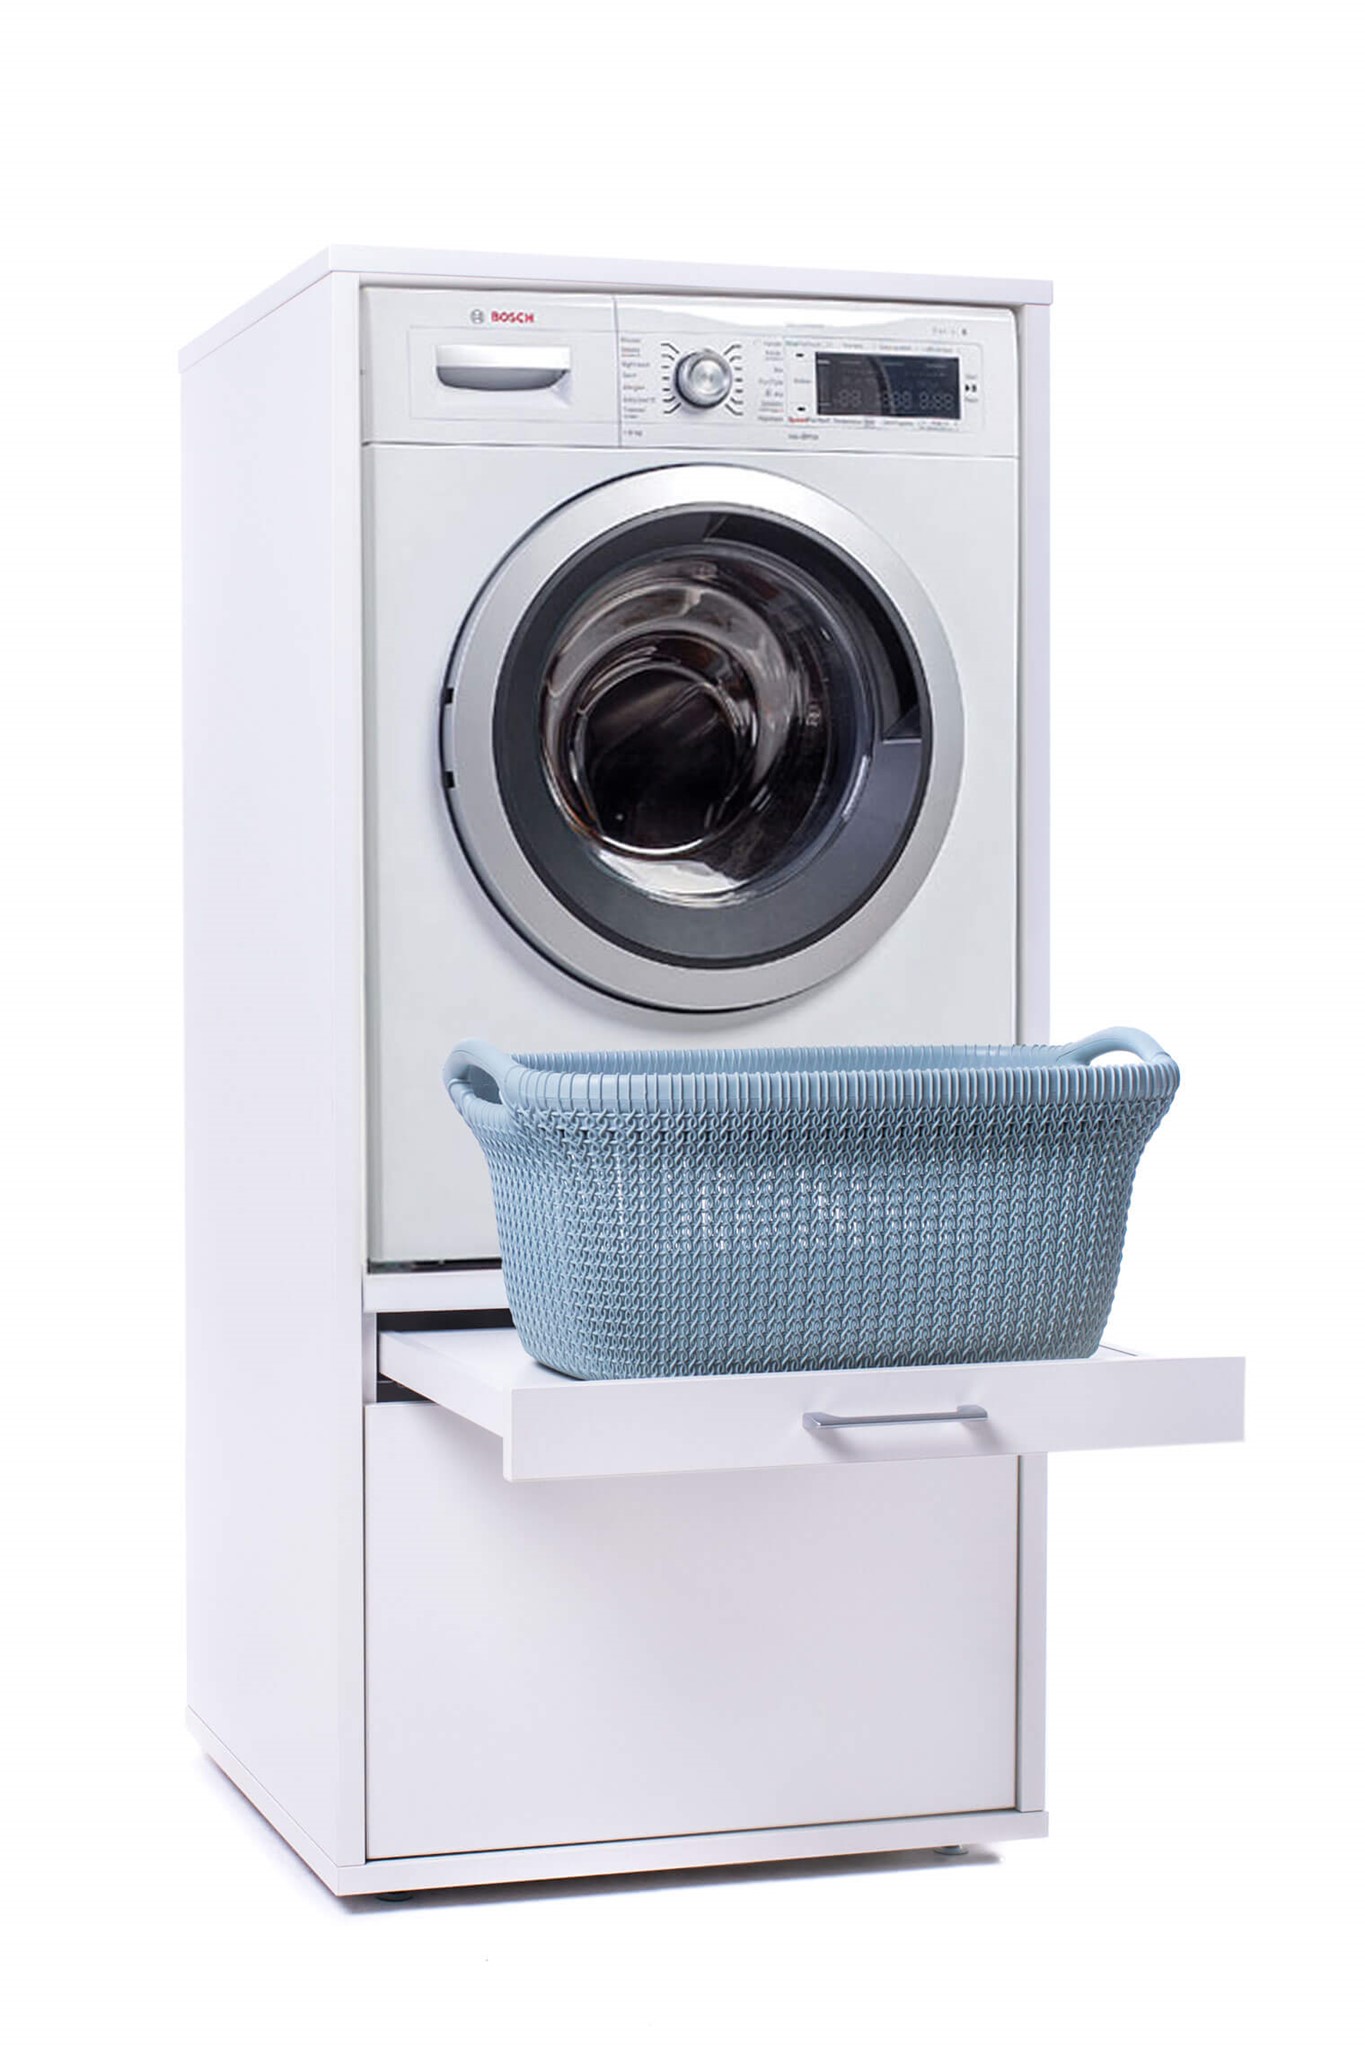 Bild von Adado Home WSCS1462 Washtower Waschmaschinenschrank mit Ausziehbrett, 145 cm hoch